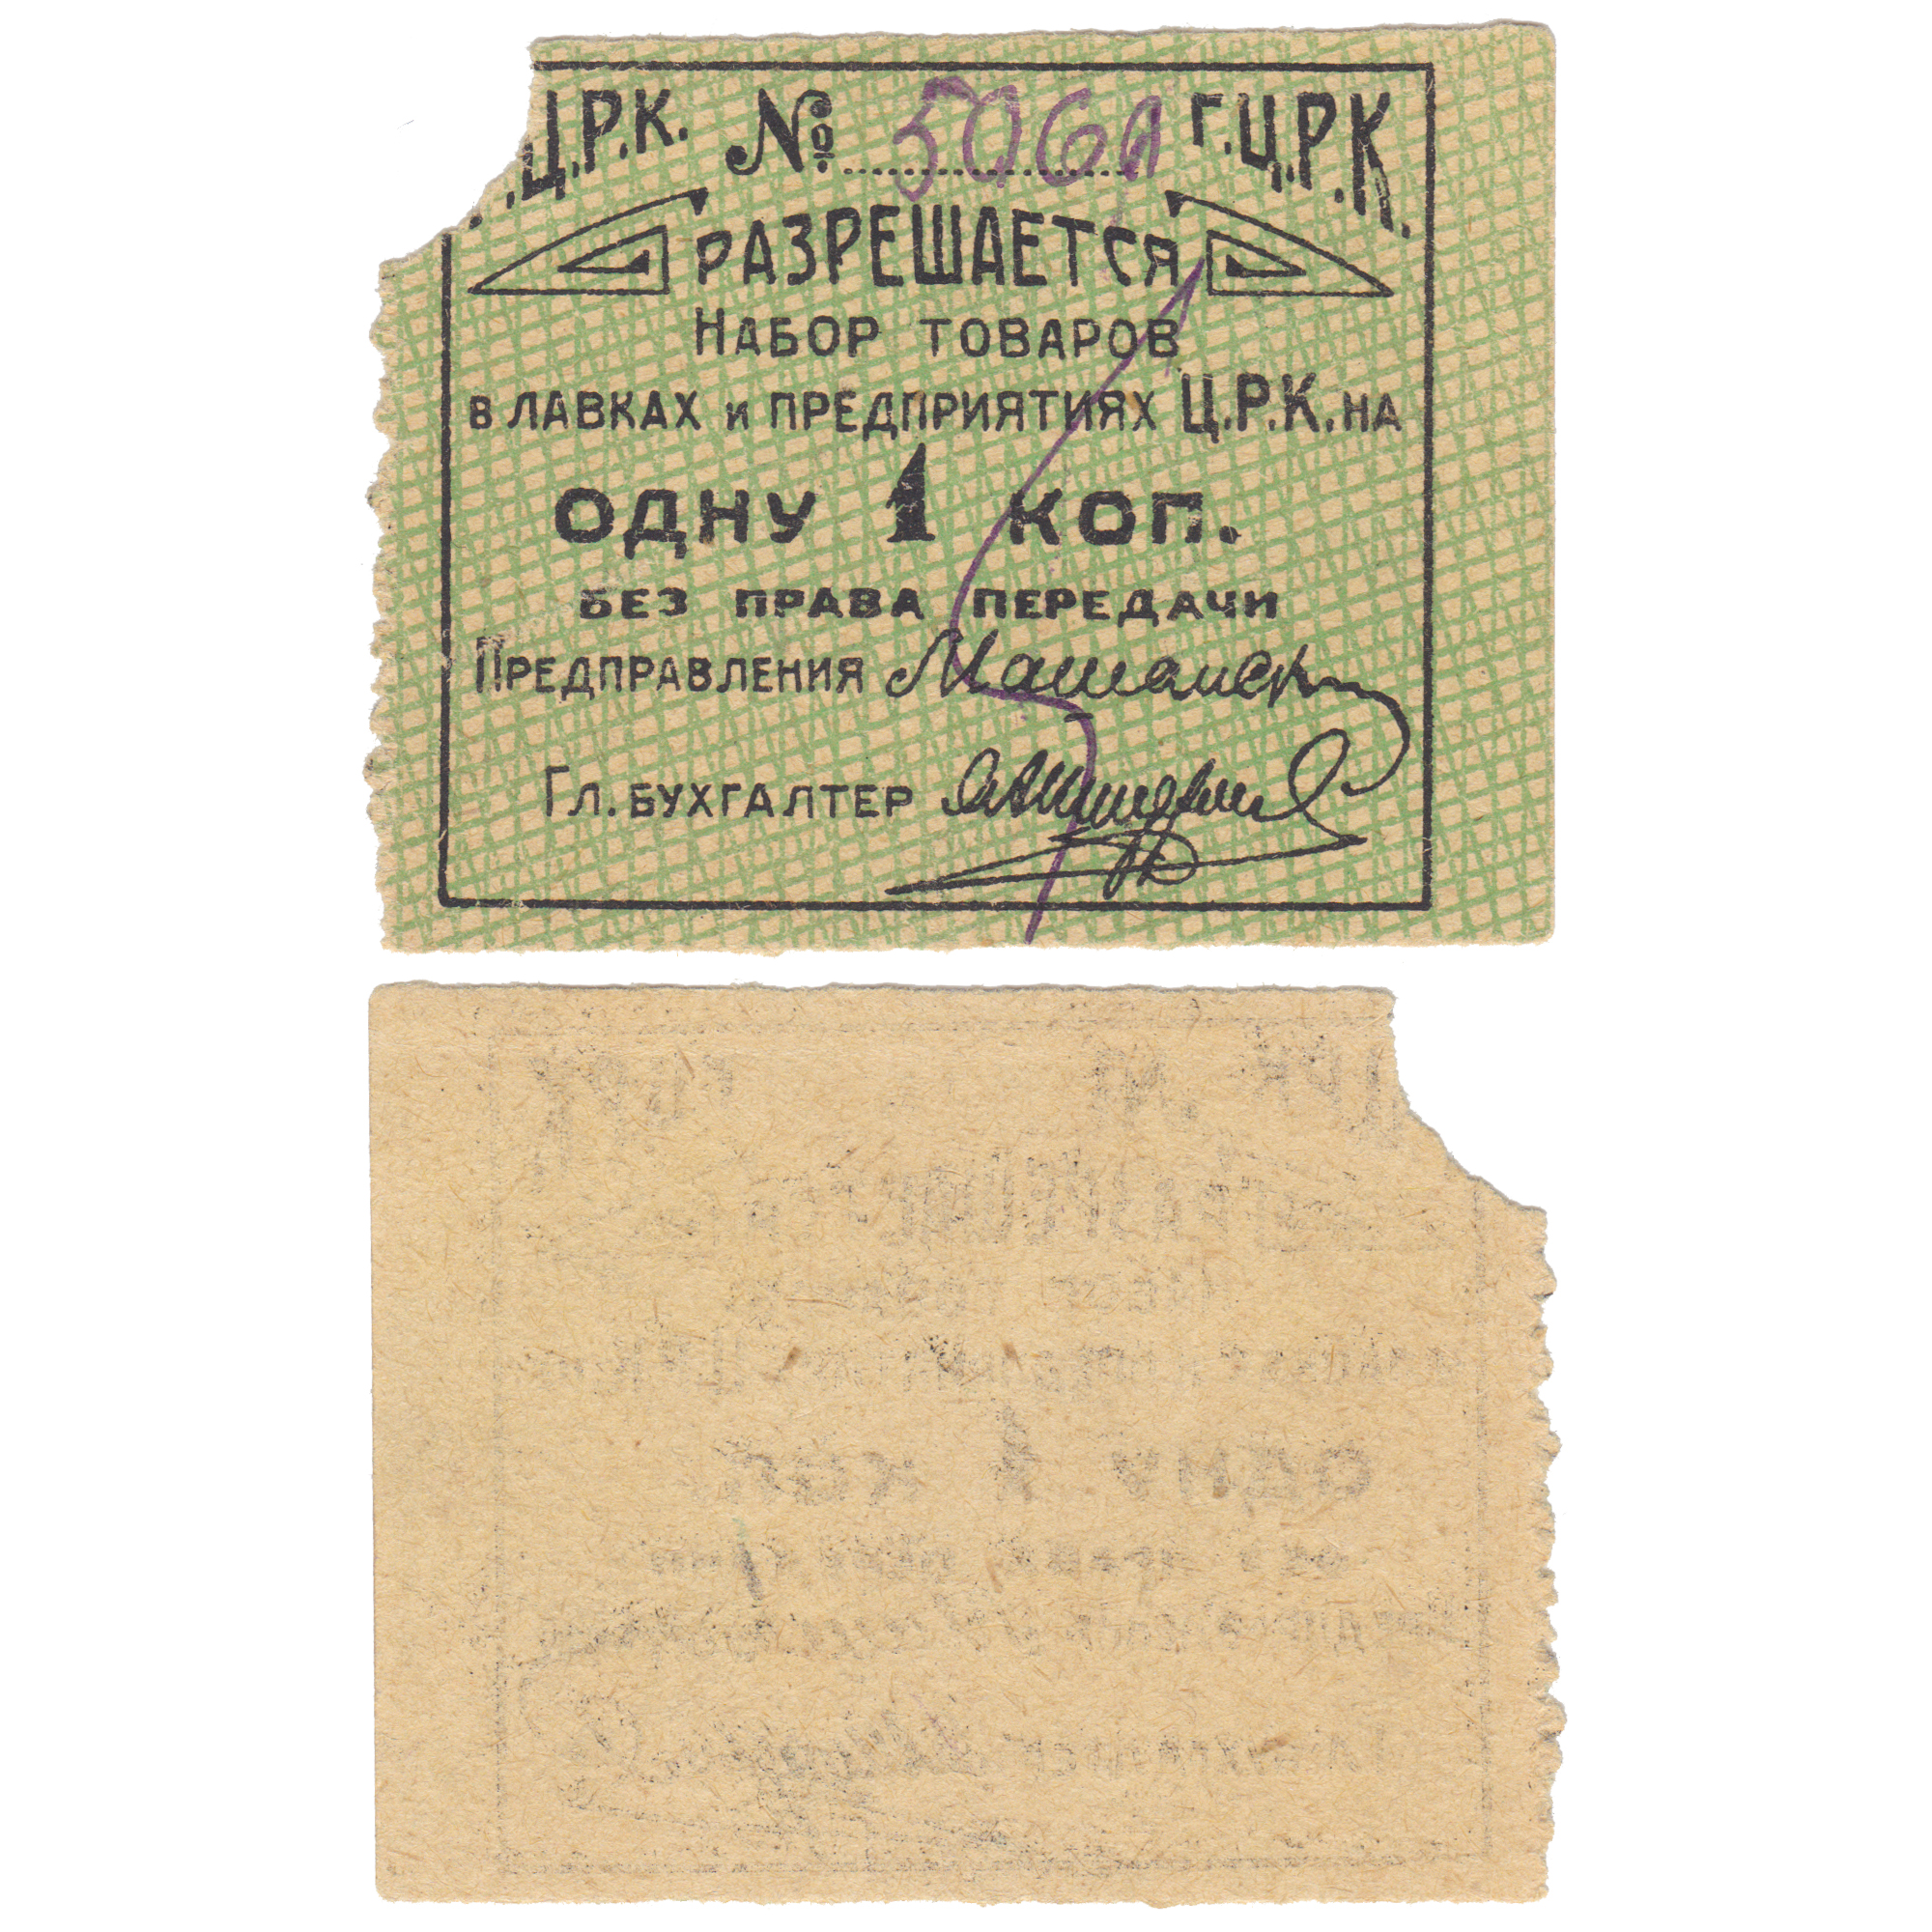 1 Копейка 1928 год. Гомельский Центральный Рабочий Кооператив (ГЦРК)